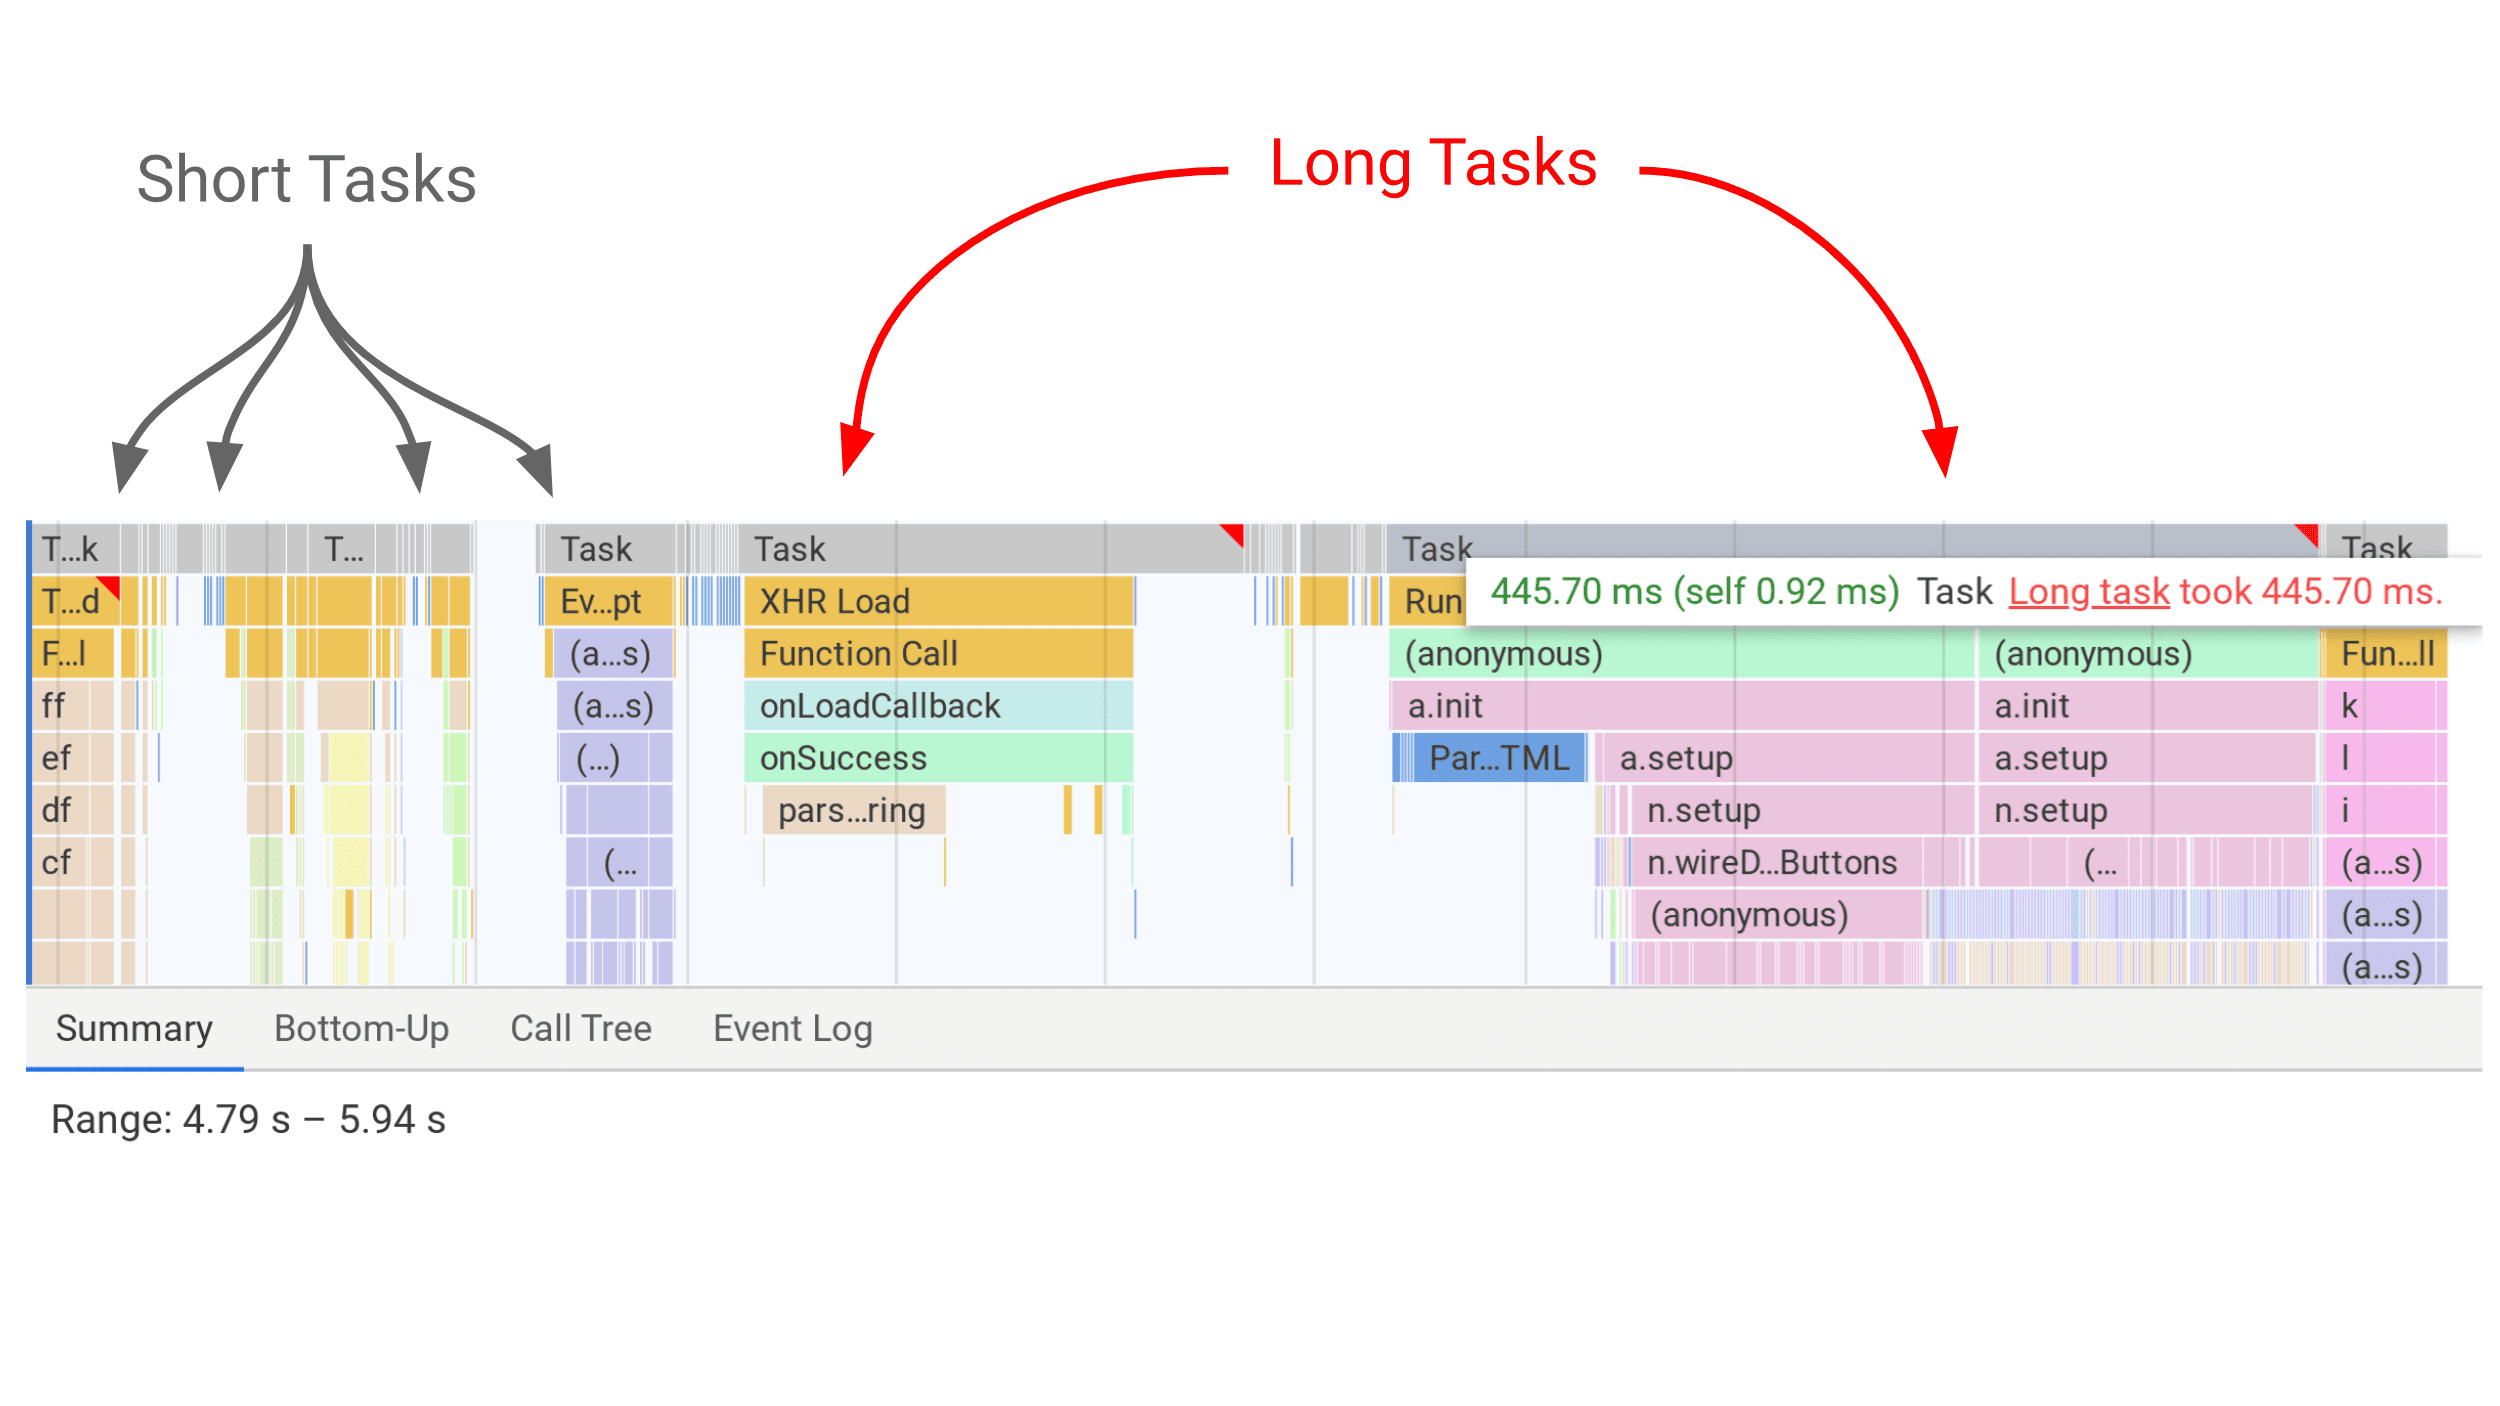 DevTools визуализирует длинные задачи в виде серых полос на панели производительности с красным флажком для длинных задач.